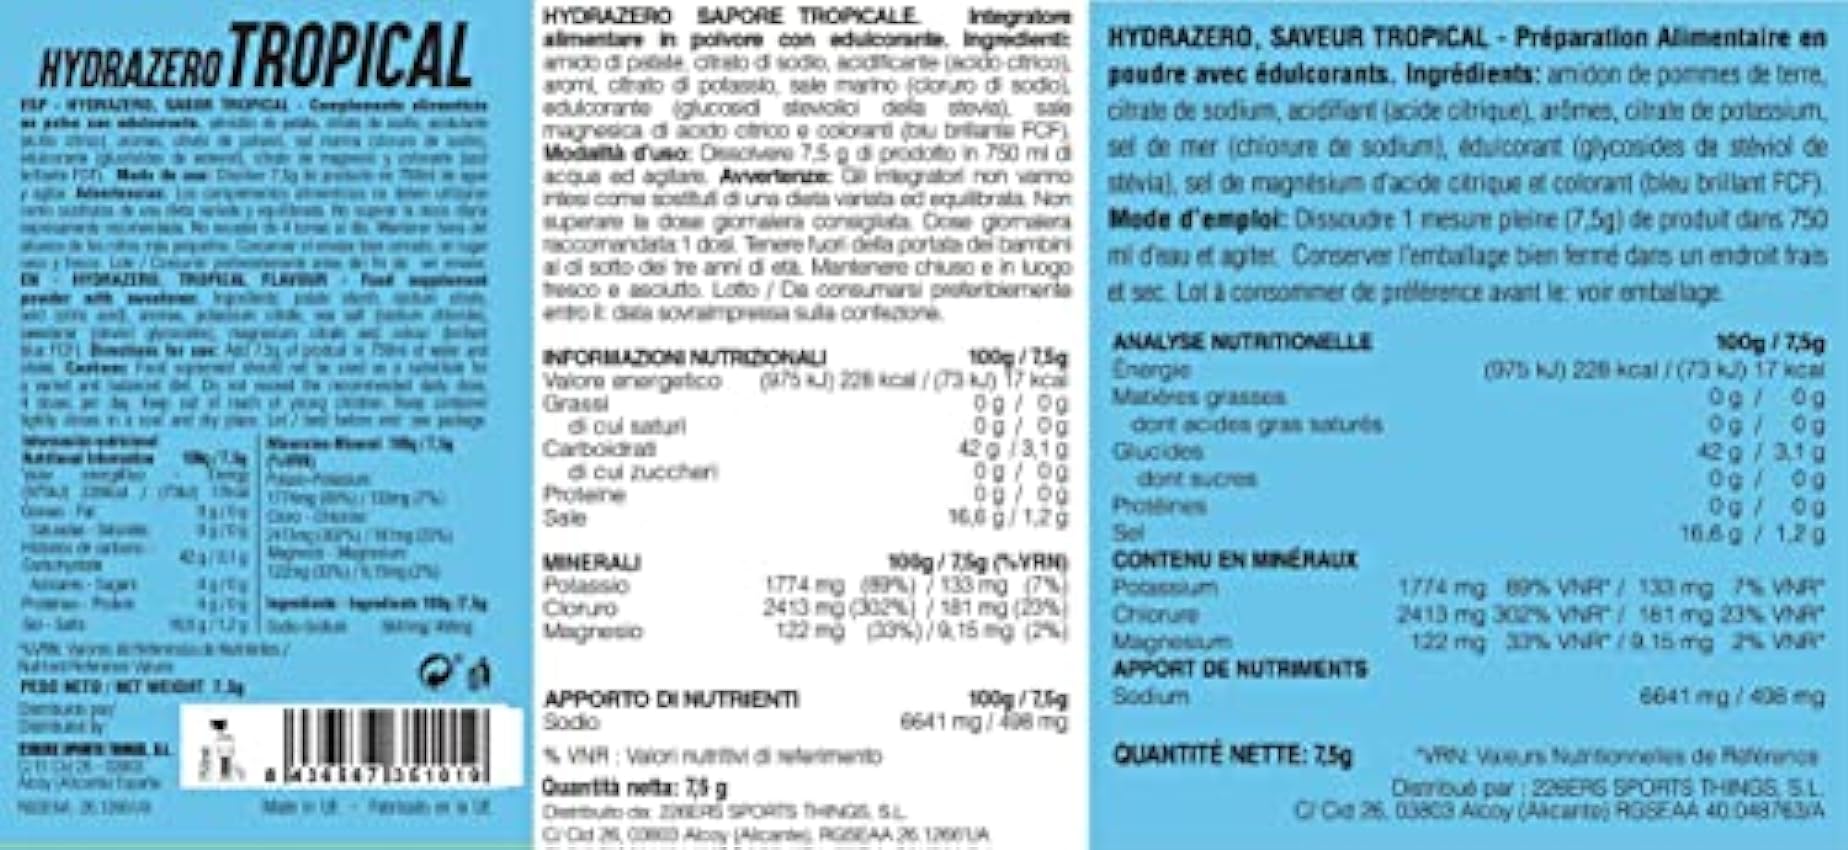 226ERS Hydrazero | Bebida de Sales Minerales en Polvo para Hidratación y Recuperación de Electrolitos, Tropical - 20 unidades 8oo6CAVk